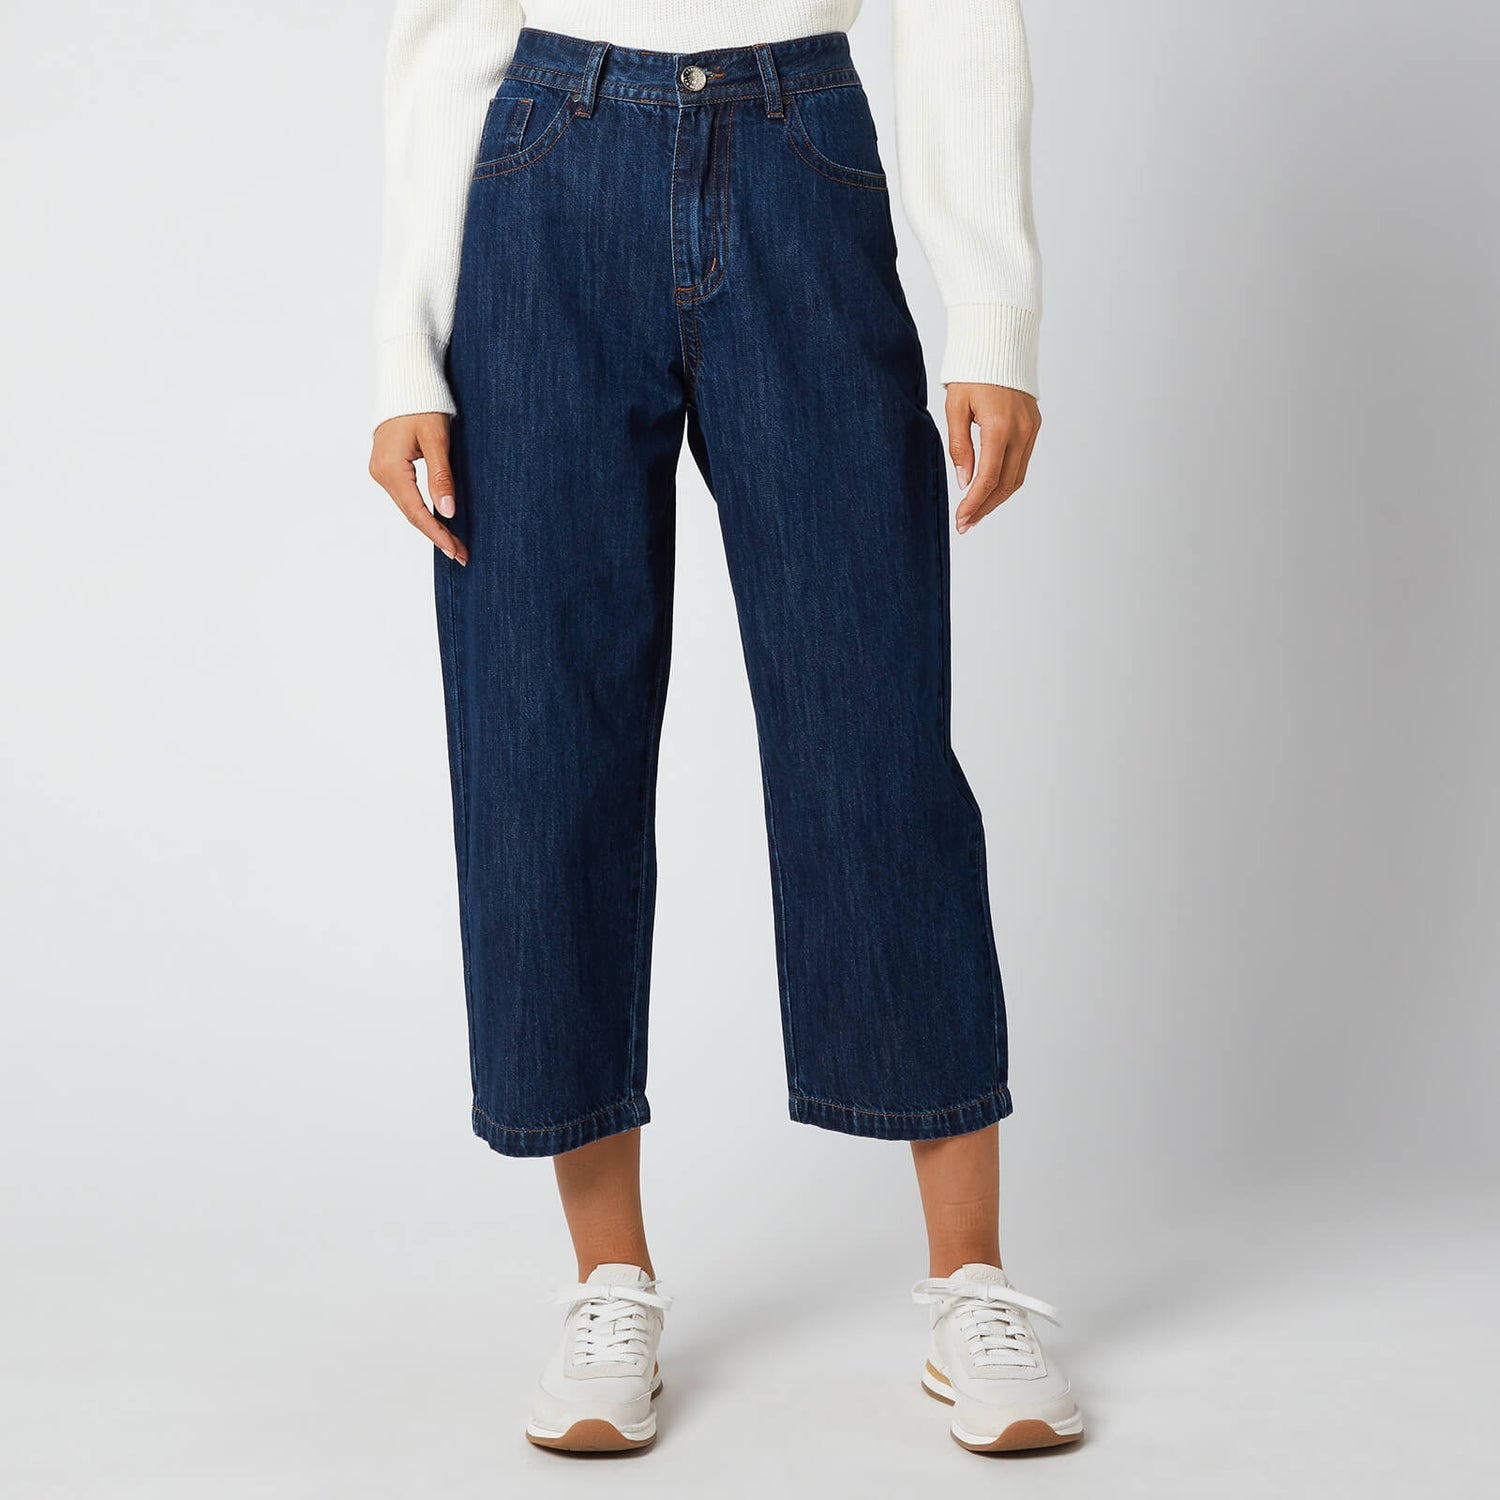 L.F Markey Women's Big Boys Jeans - Indigo - W28